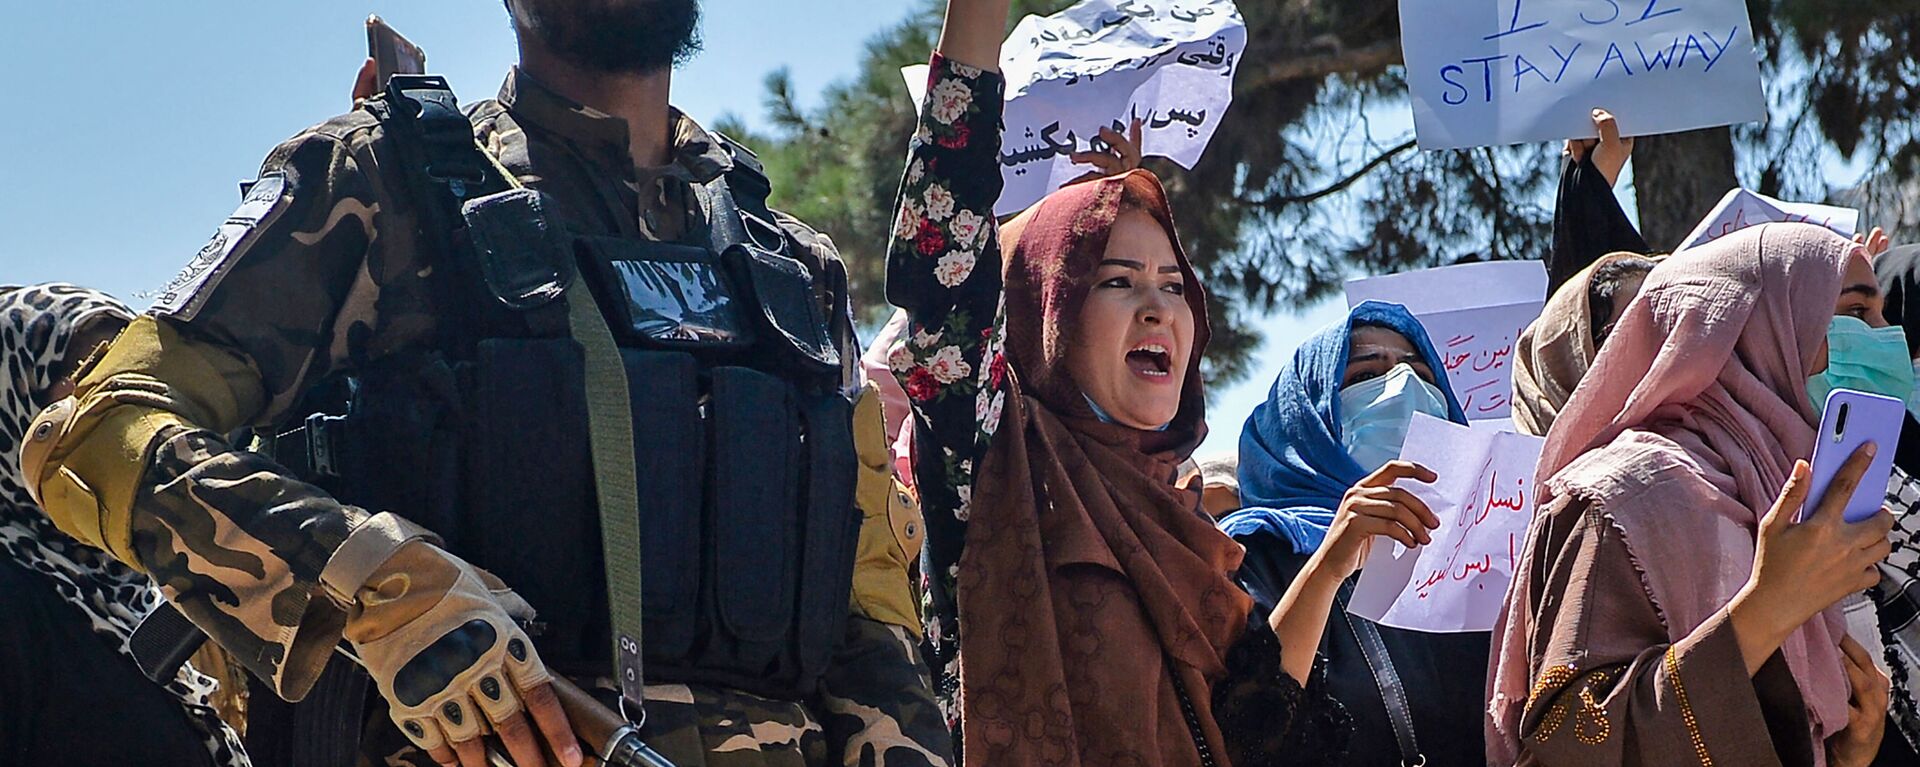 Афганские женщины выкрикивают лозунги рядом с боевиками Талибана во время антипакистанской демонстрации у посольства Пакистана в Кабуле - Sputnik Azərbaycan, 1920, 24.12.2022